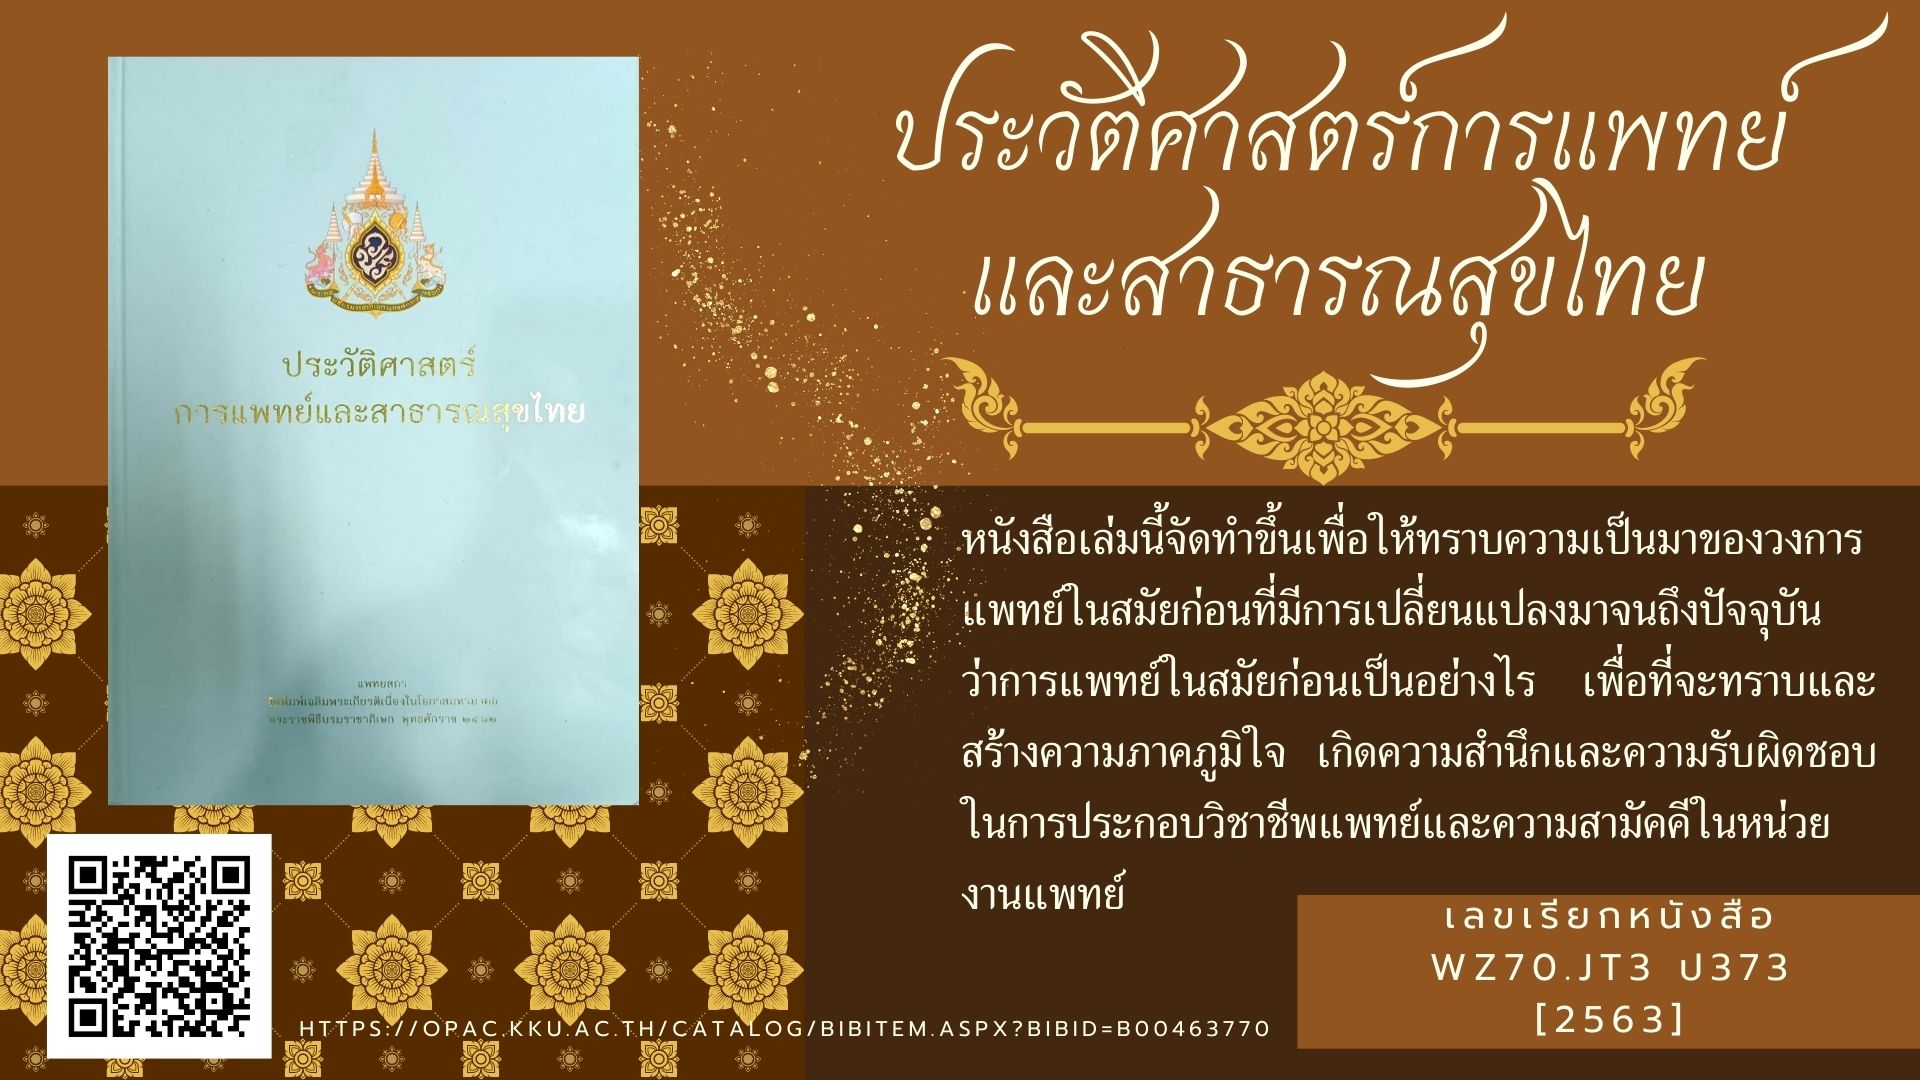 ประวัติศาสตร์การแพทย์และสาธารณสุขไทย